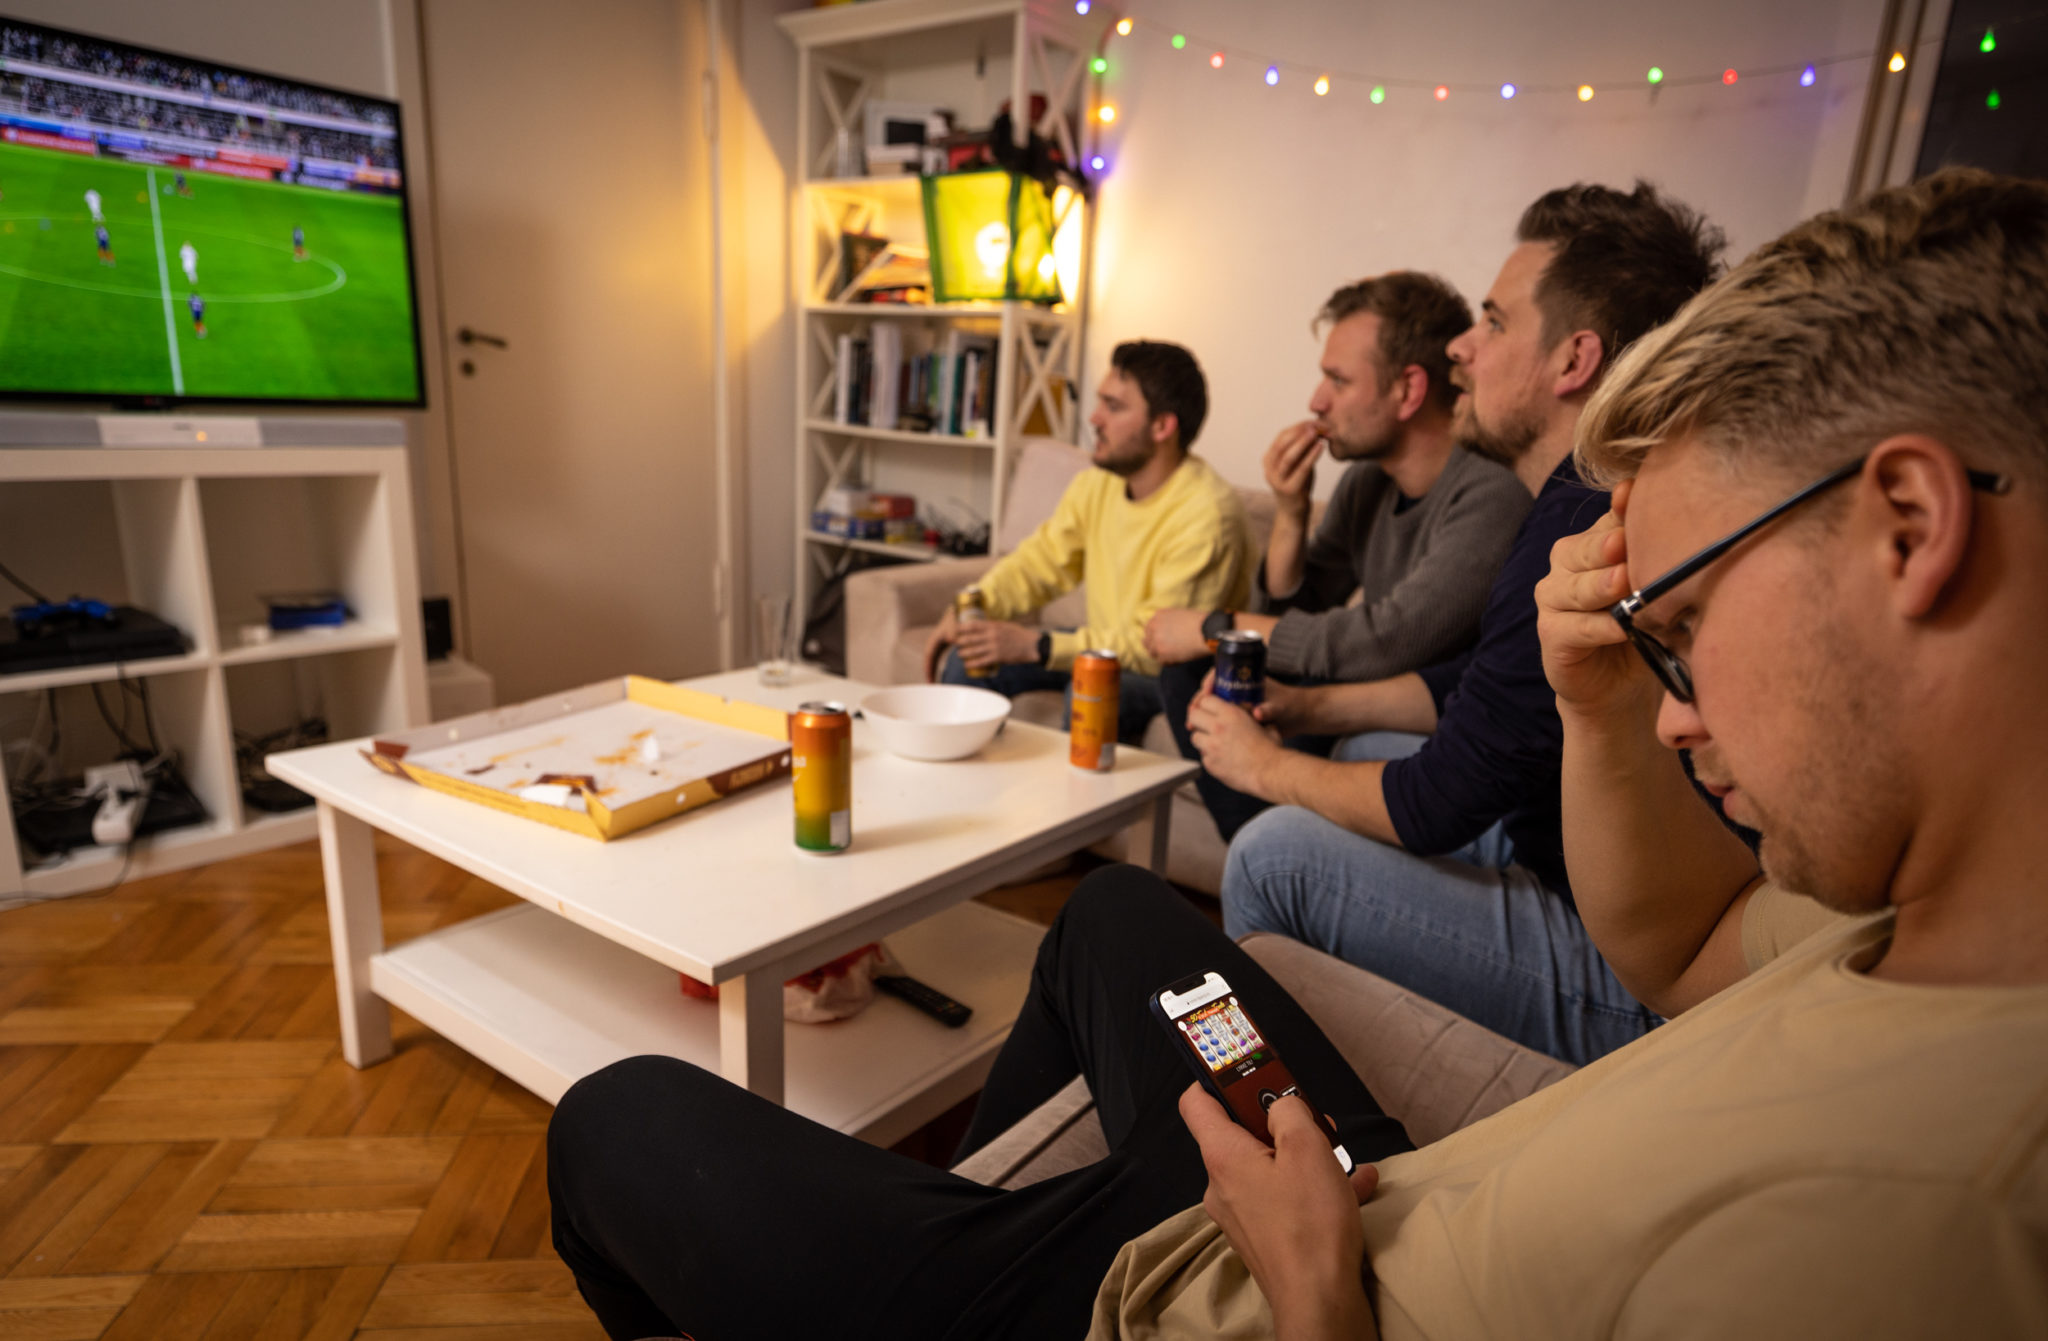 En guttegjeng sitter og ser på fotball på TV. En av dem sitter derimot på enden av sofaen og spiller pengespill på telefonen med et konsentrert utrykk i ansiktet.